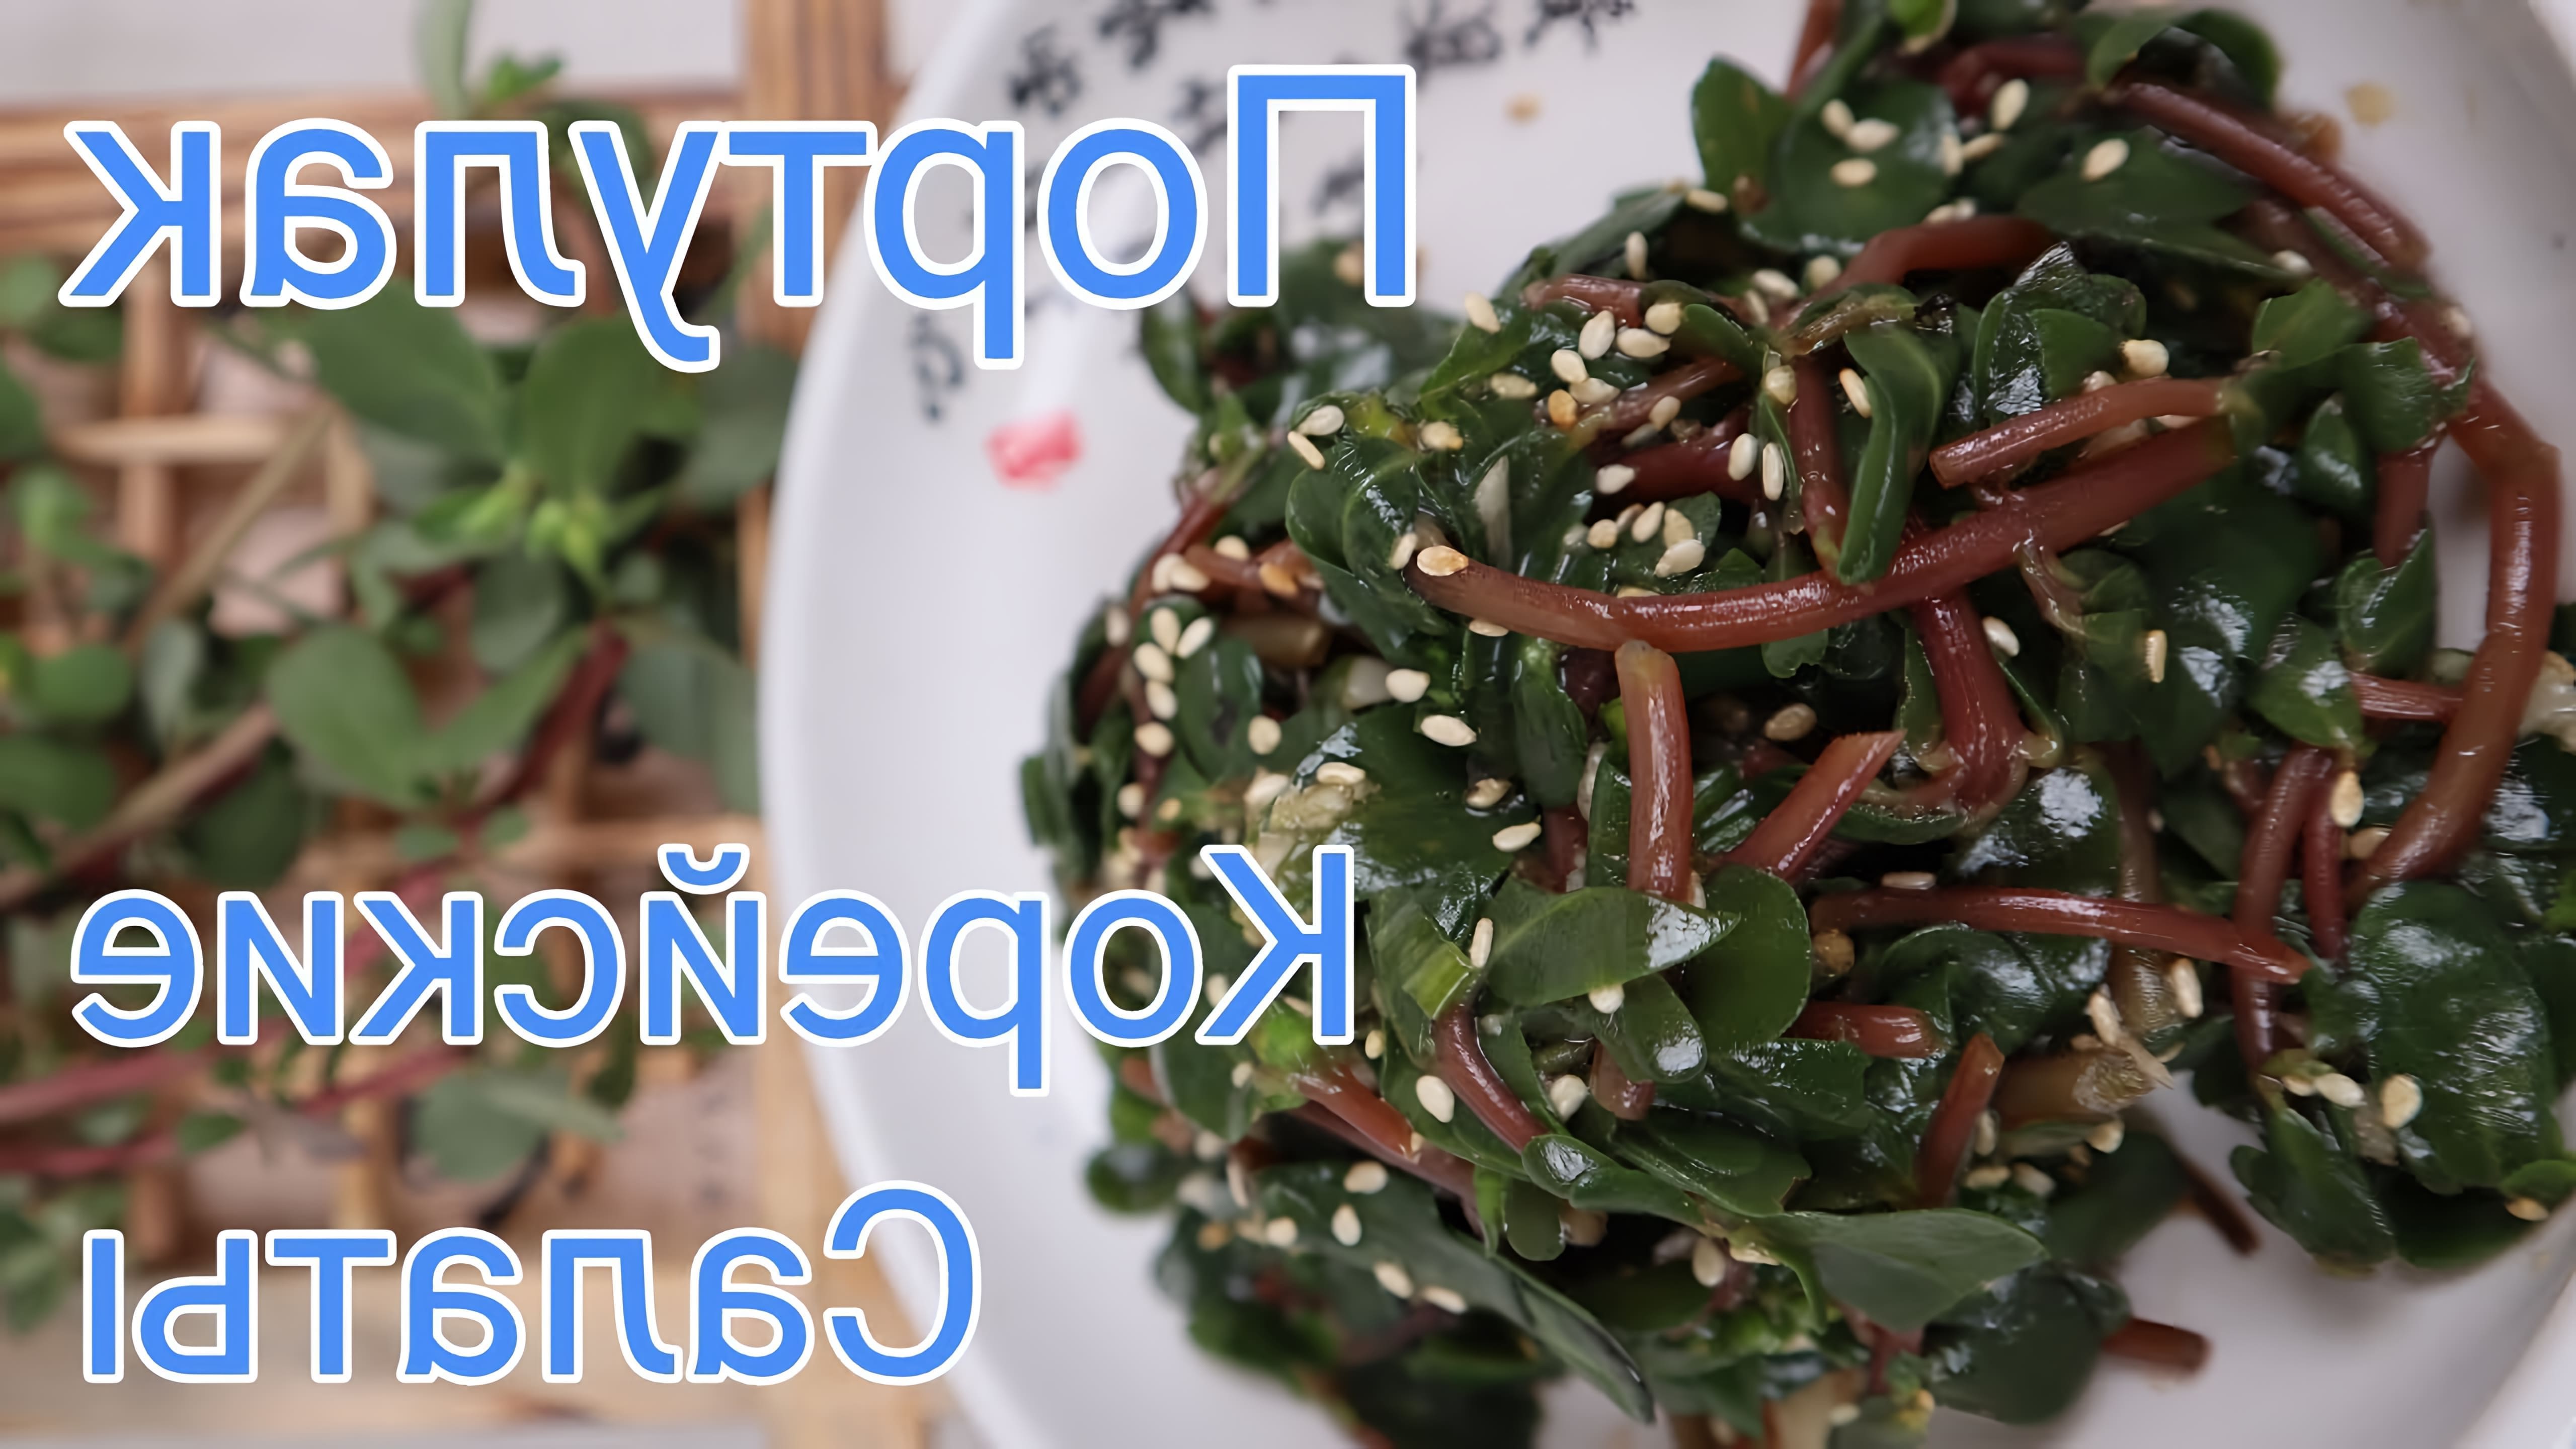 В этом видео демонстрируется приготовление двух салатов с использованием портулака - растения, которое часто считается сорняком, но на самом деле очень вкусно и полезно